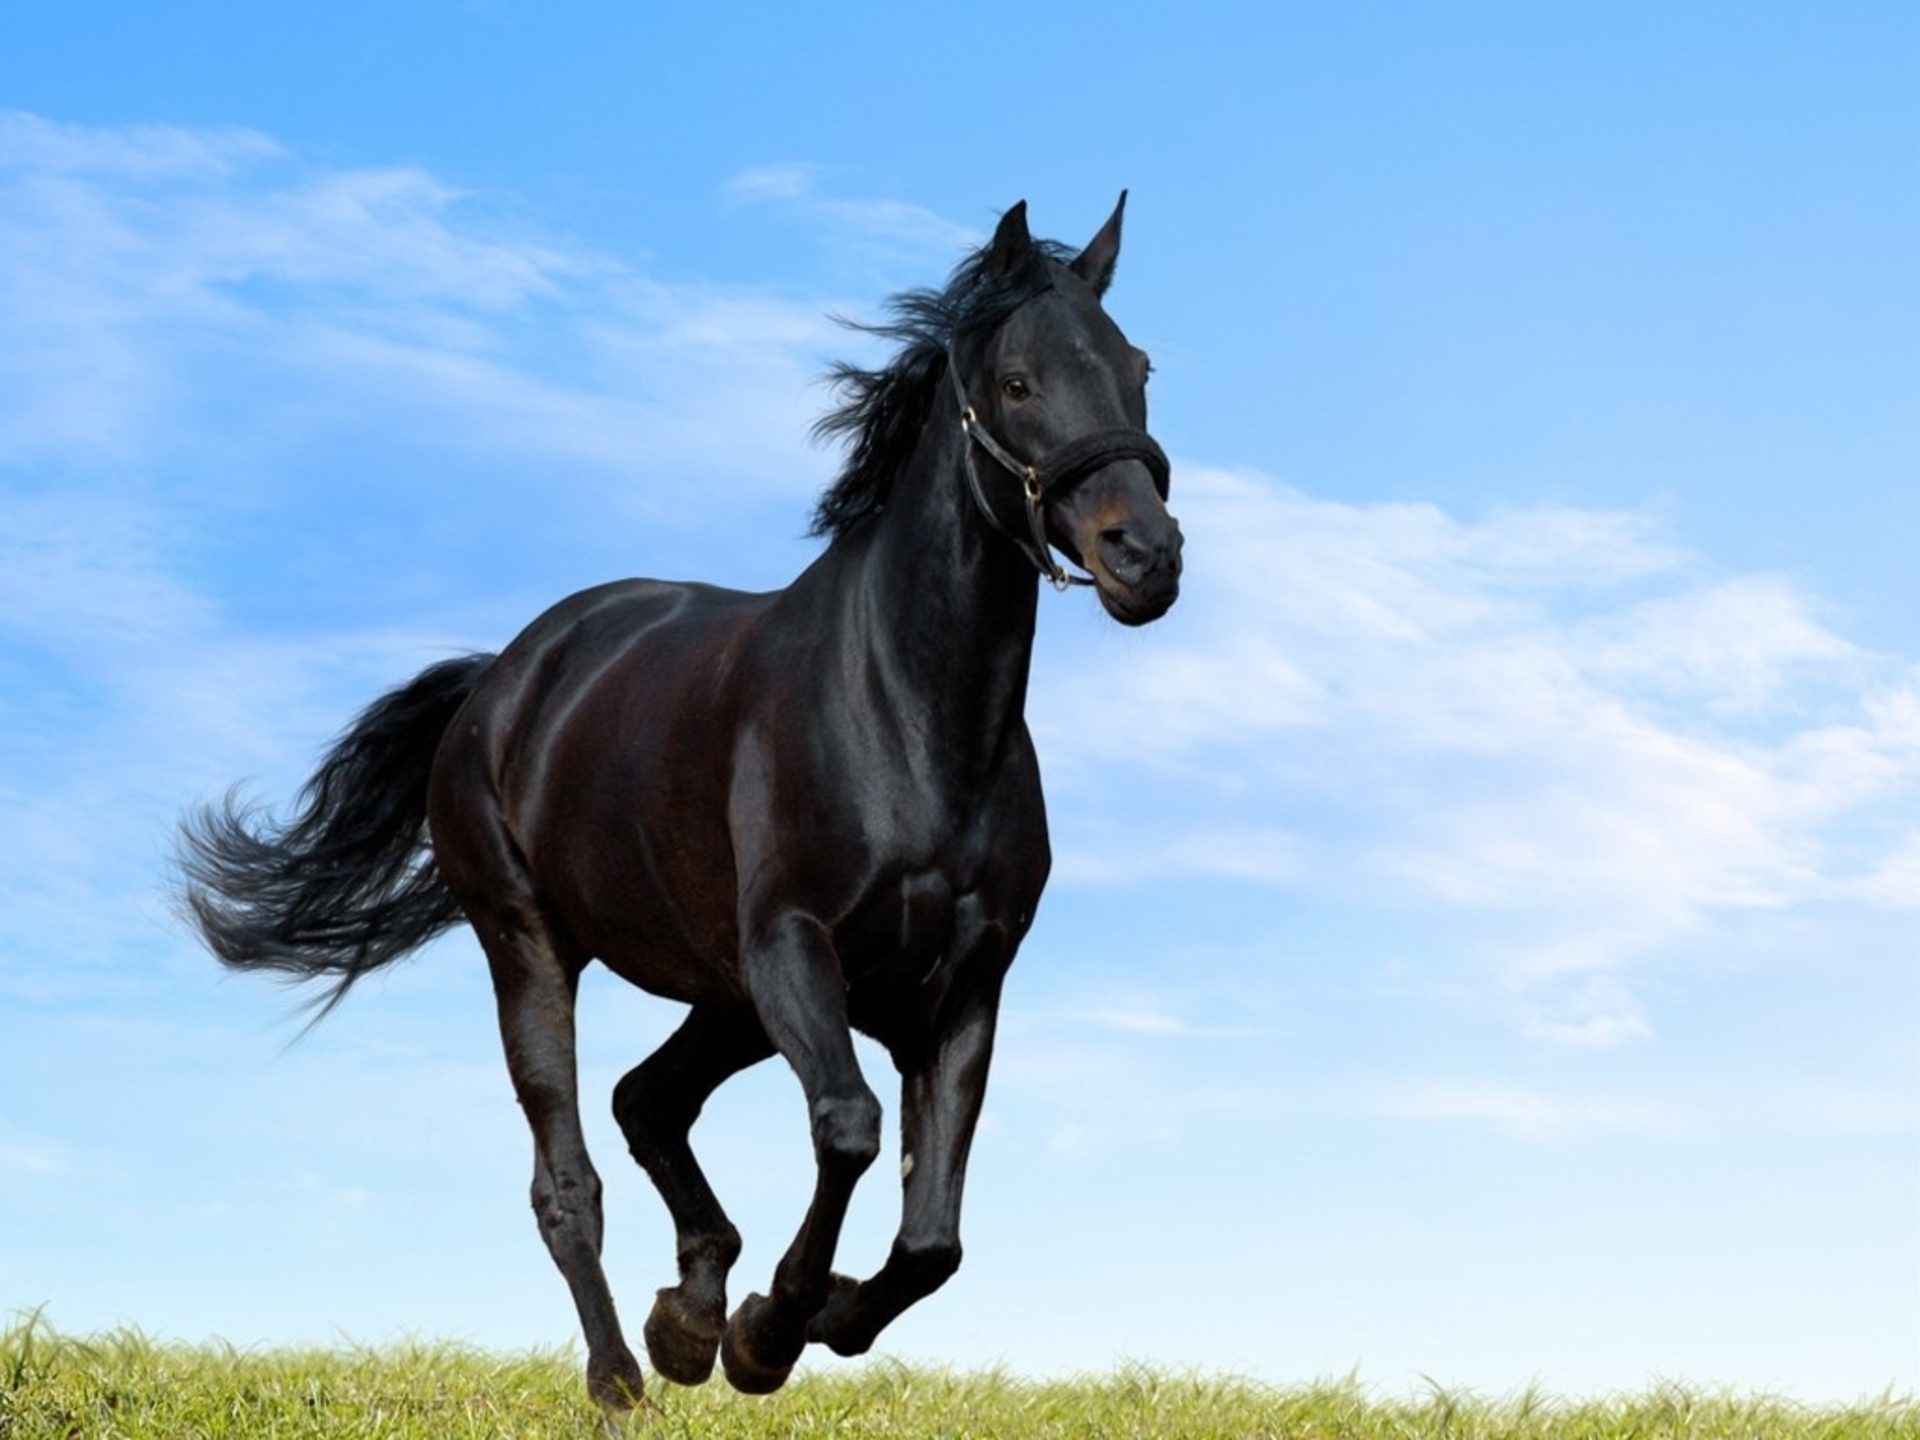 HD Black Horse Image Amazing Images Cool Background Photos Windows